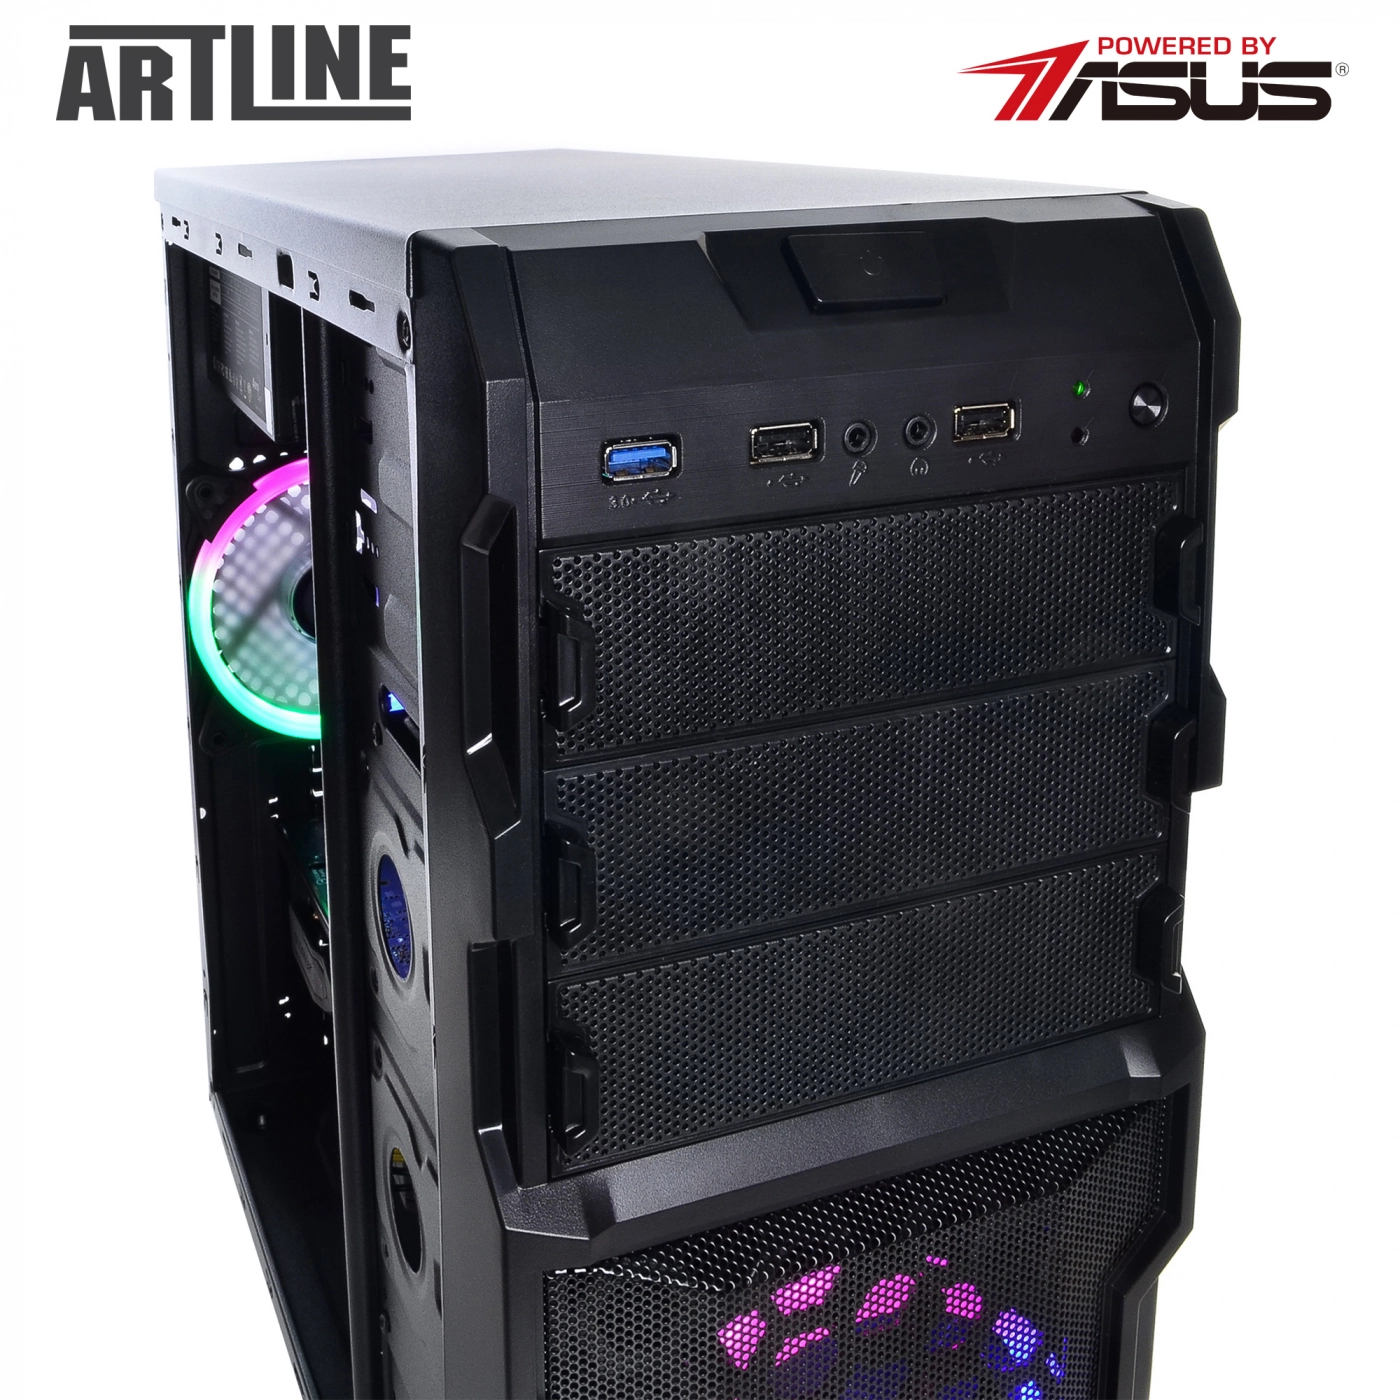 Купить Компьютер ARTLINE Gaming X45v15 - фото 10